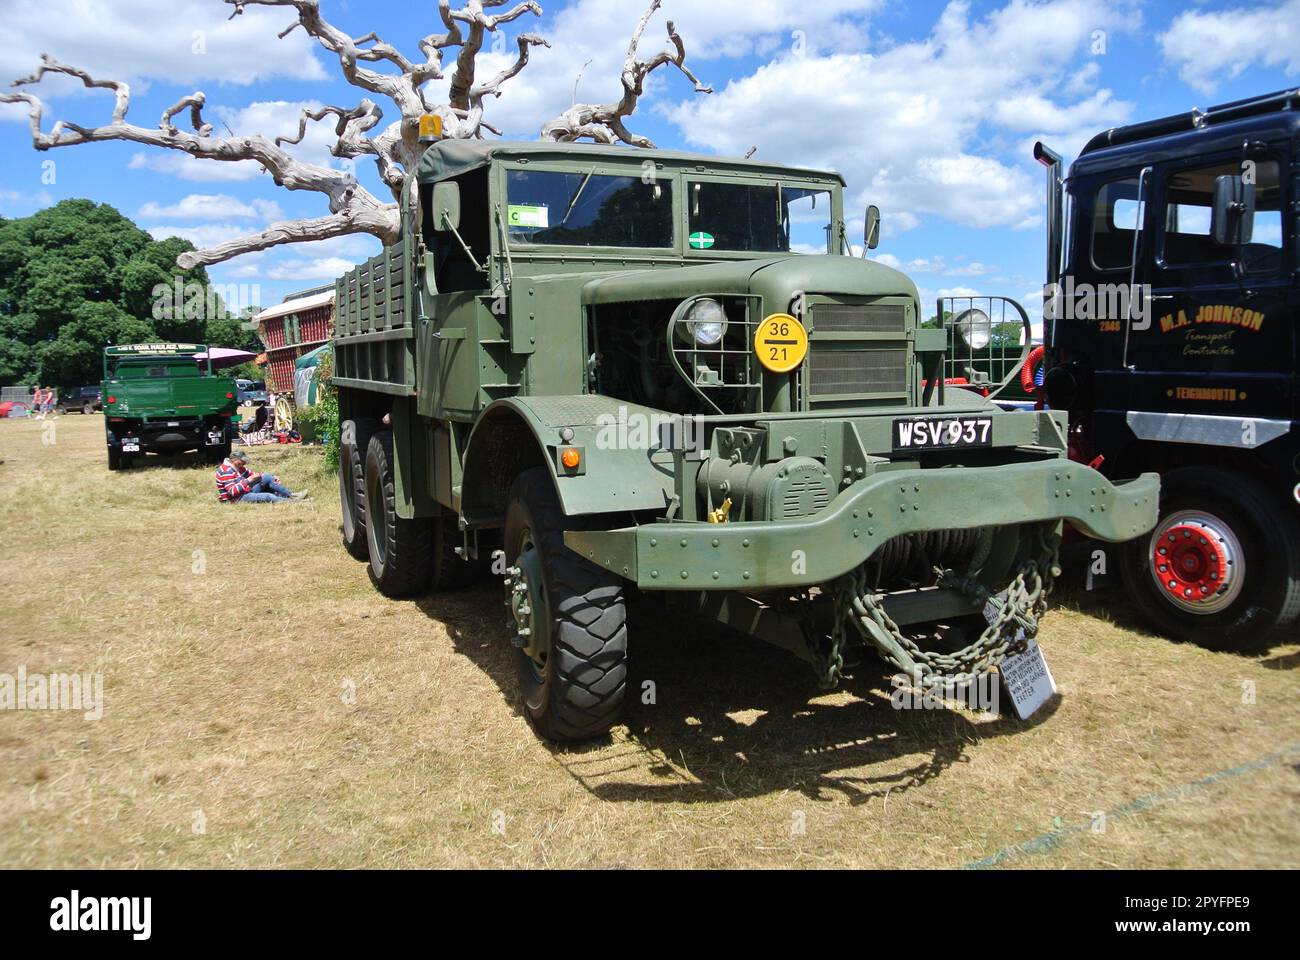 Un tracteur Mack Gun 1941 est exposé au rassemblement de véhicules historiques de 47th, Powderham, Devon, Angleterre, Royaume-Uni. Banque D'Images